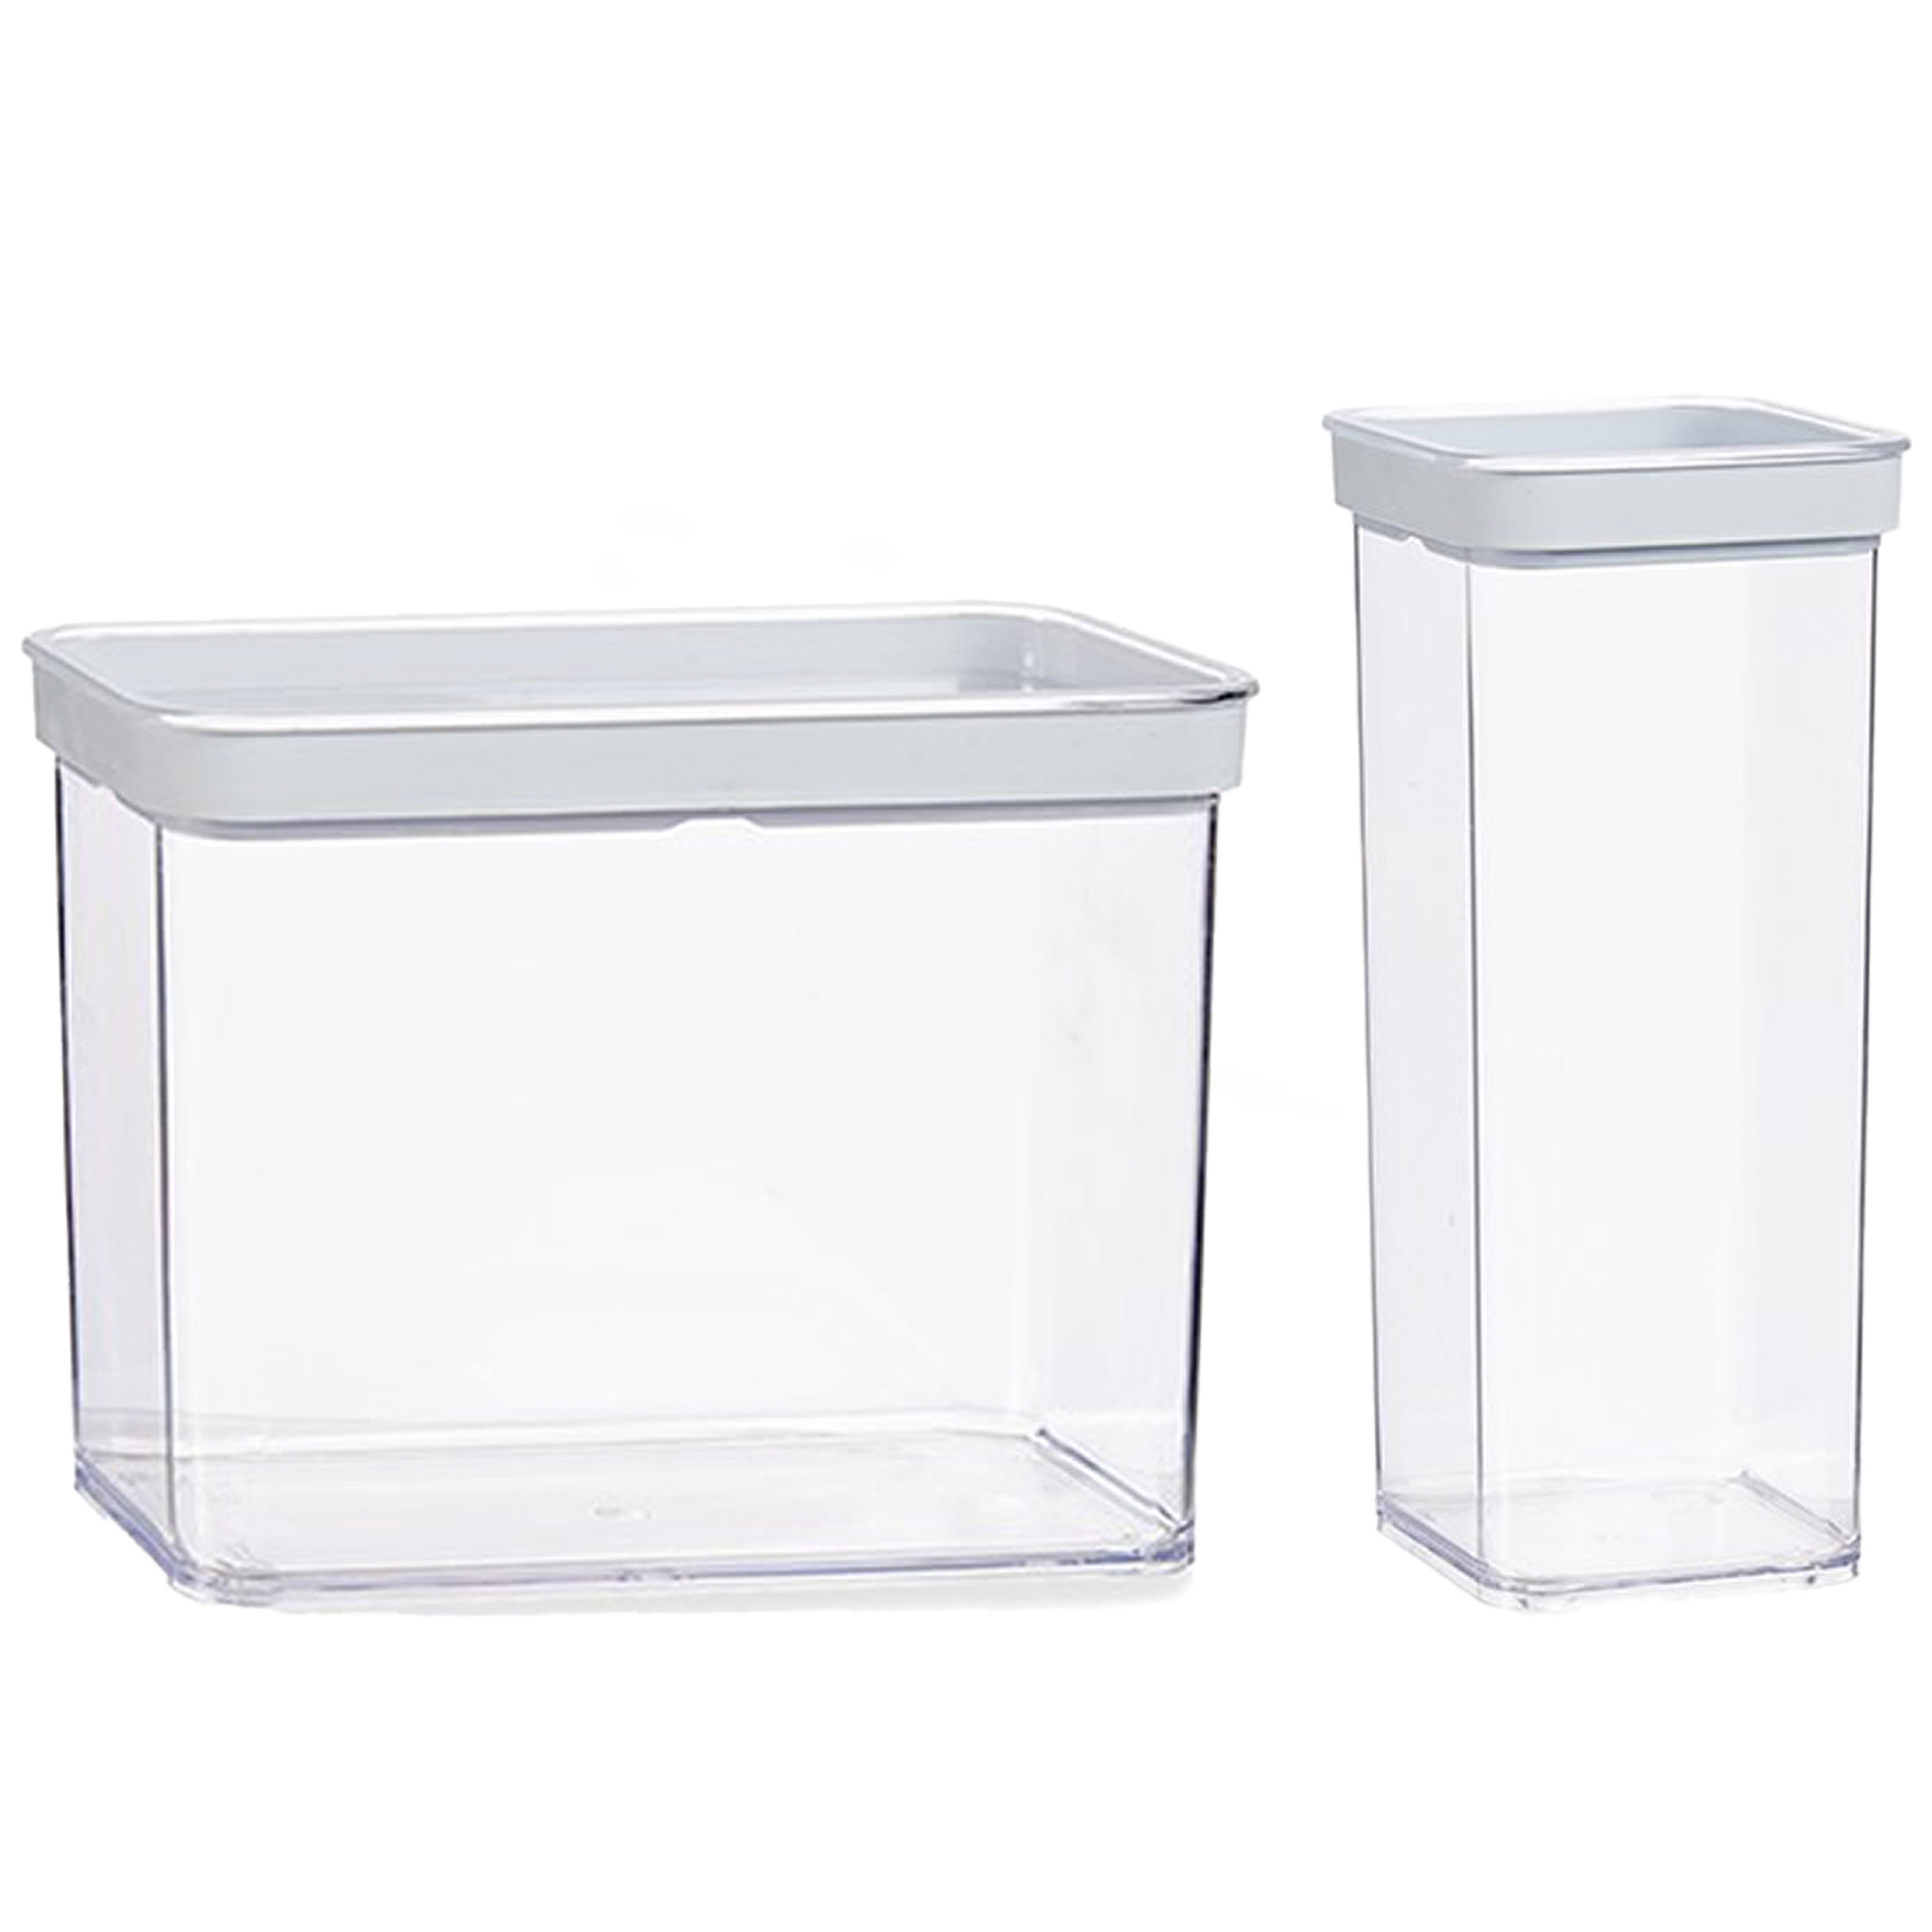 Gondol Plastics 6x stuks keuken voorraad potten/bakjes set met deksel 2.2 en 1.5 liter -